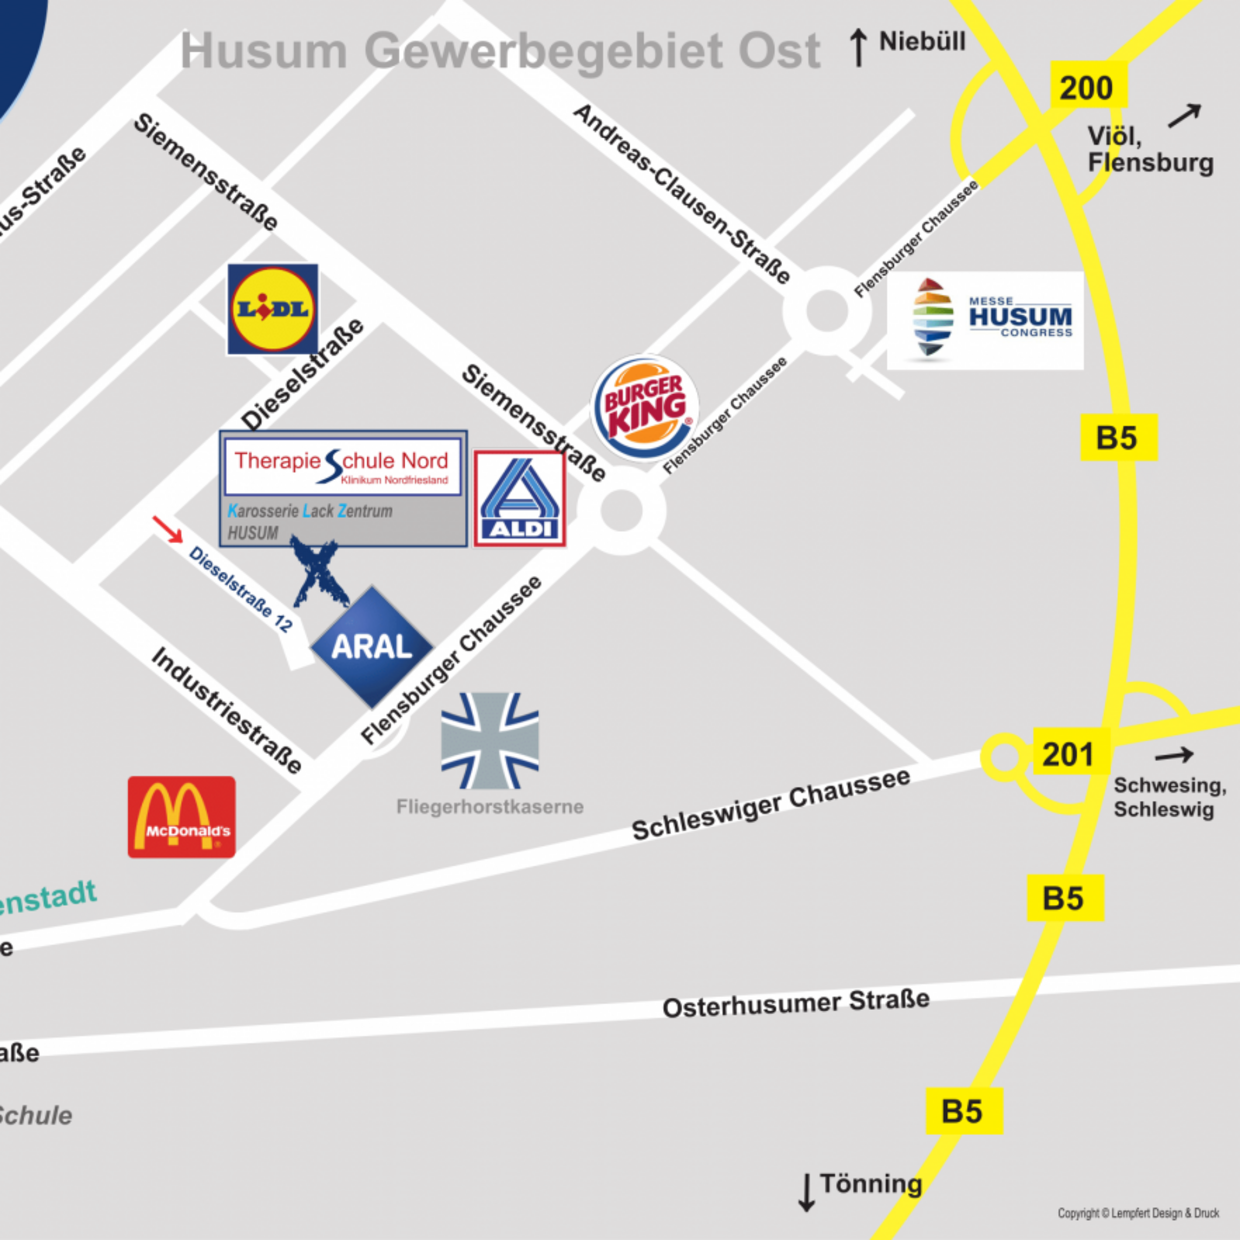 Bei dem Bild handelt es sich um einen Auszug aus dem Stadtplan Husum, der den Weg zu der Therapieschule Nord des Klinikums in der Dieselstraße 12 zeigt